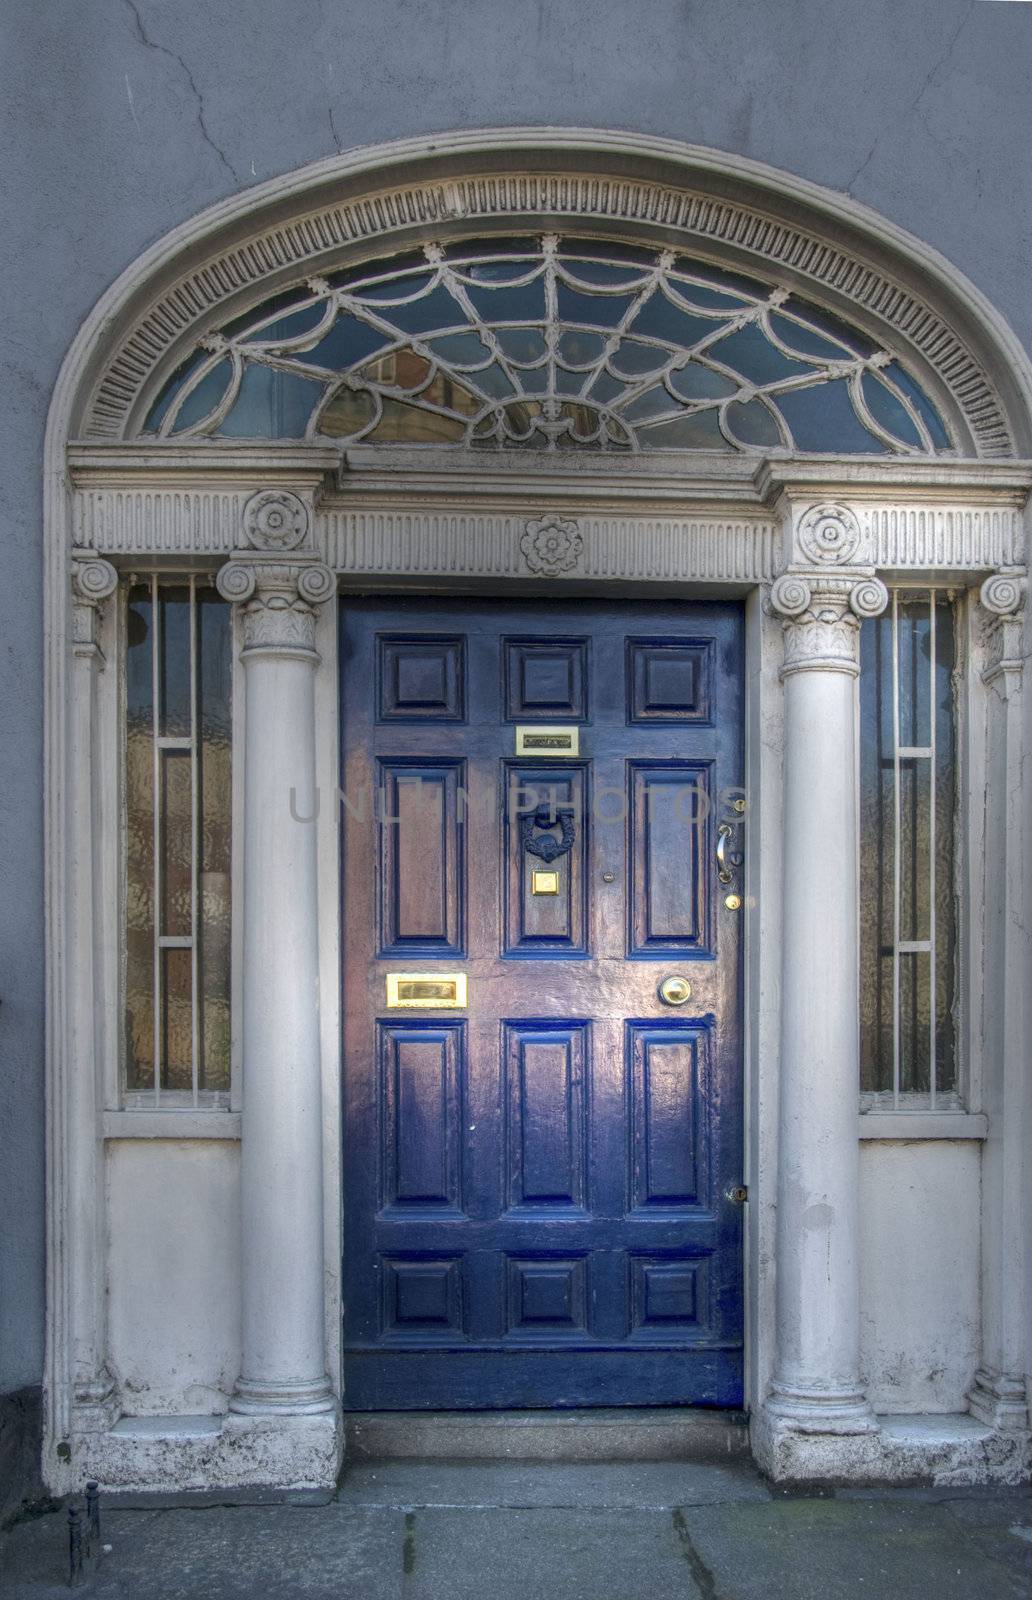 Dublin Door, 2009 by jovannig